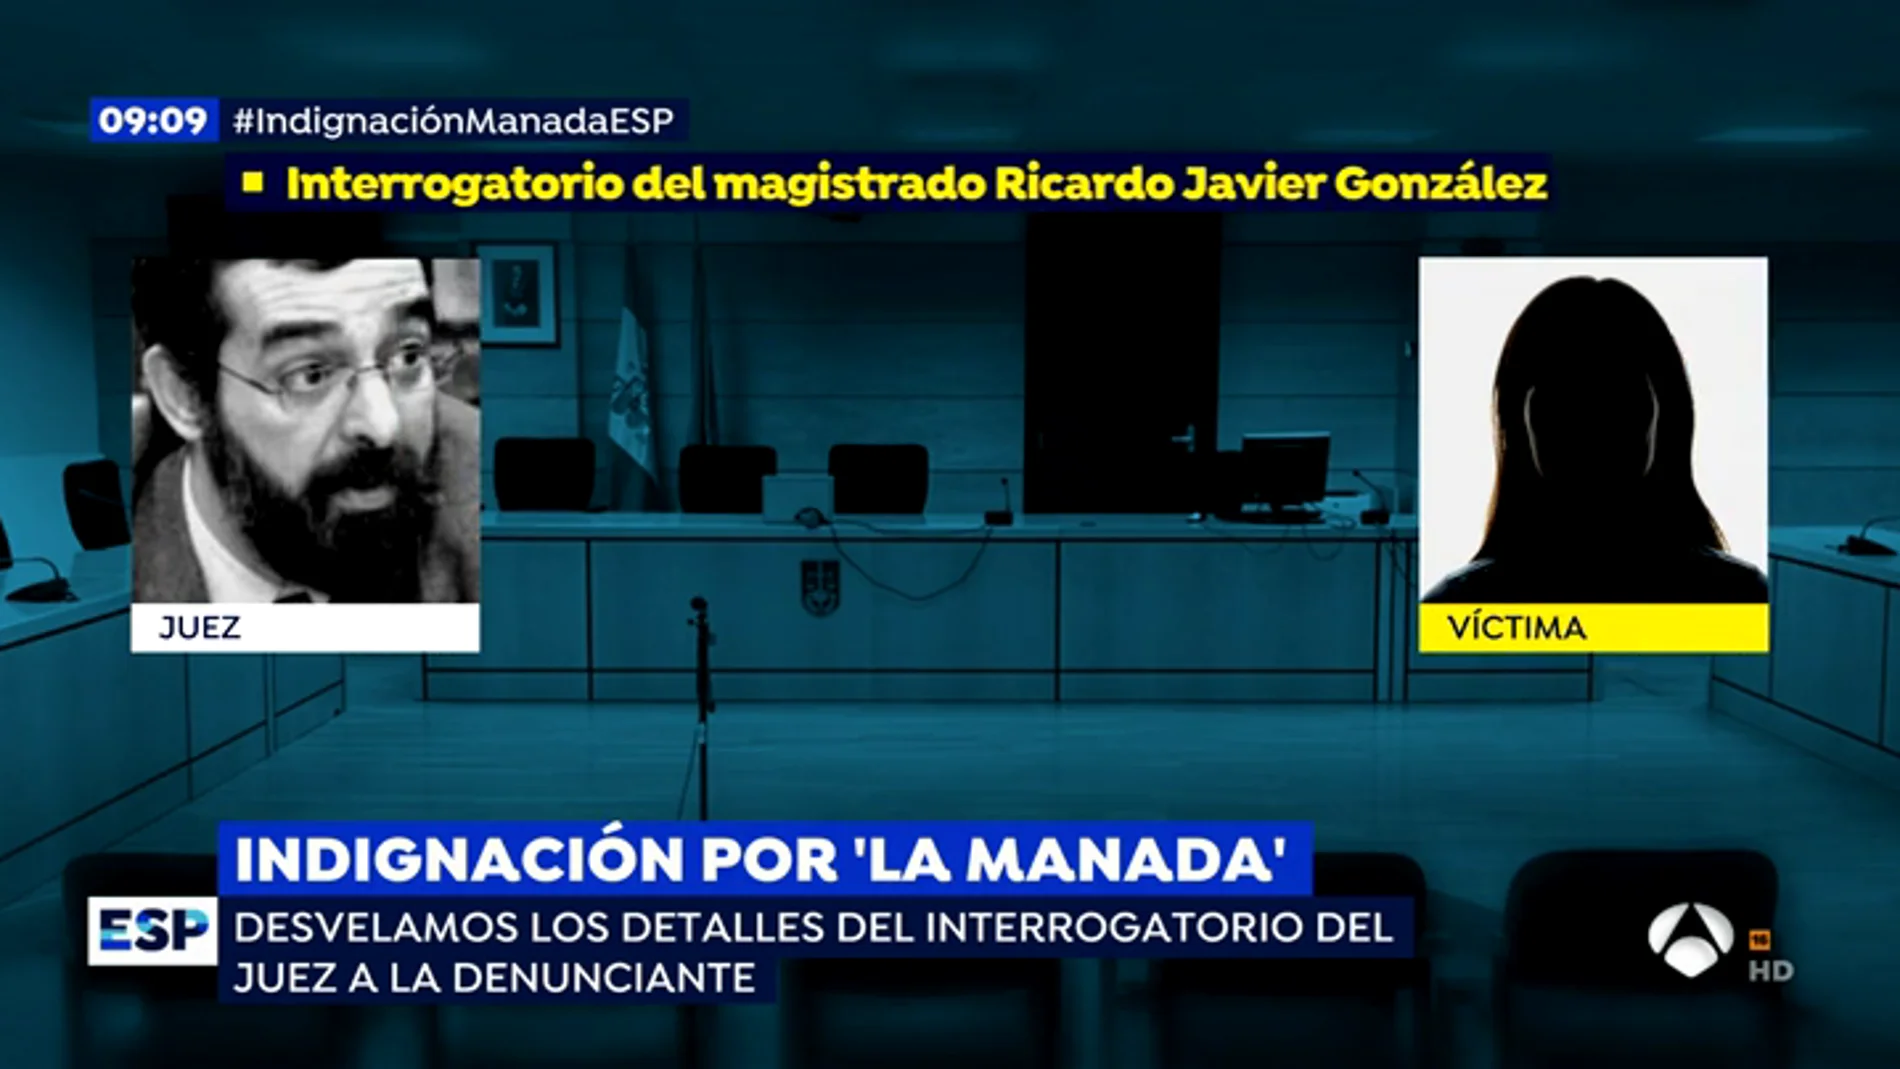 Así fue el tenso interrogatorio del juez Ricardo Javier González que pidió absolver a 'La Manada' con la víctima